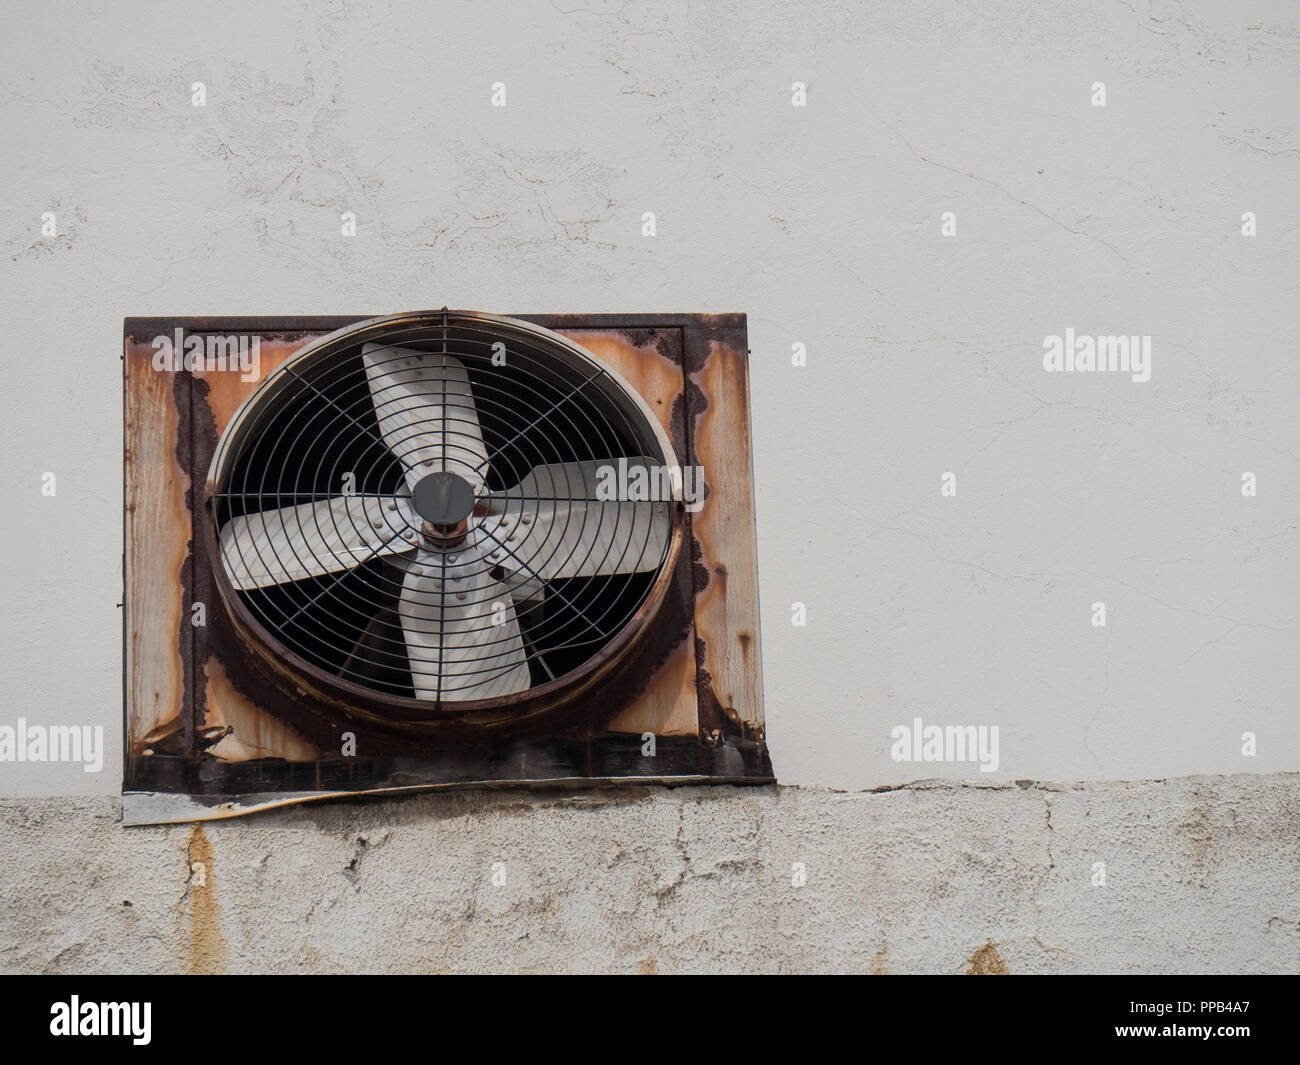 Industrielle Lüftung Abluft Ventilator an der Wand Stockfotografie - Alamy